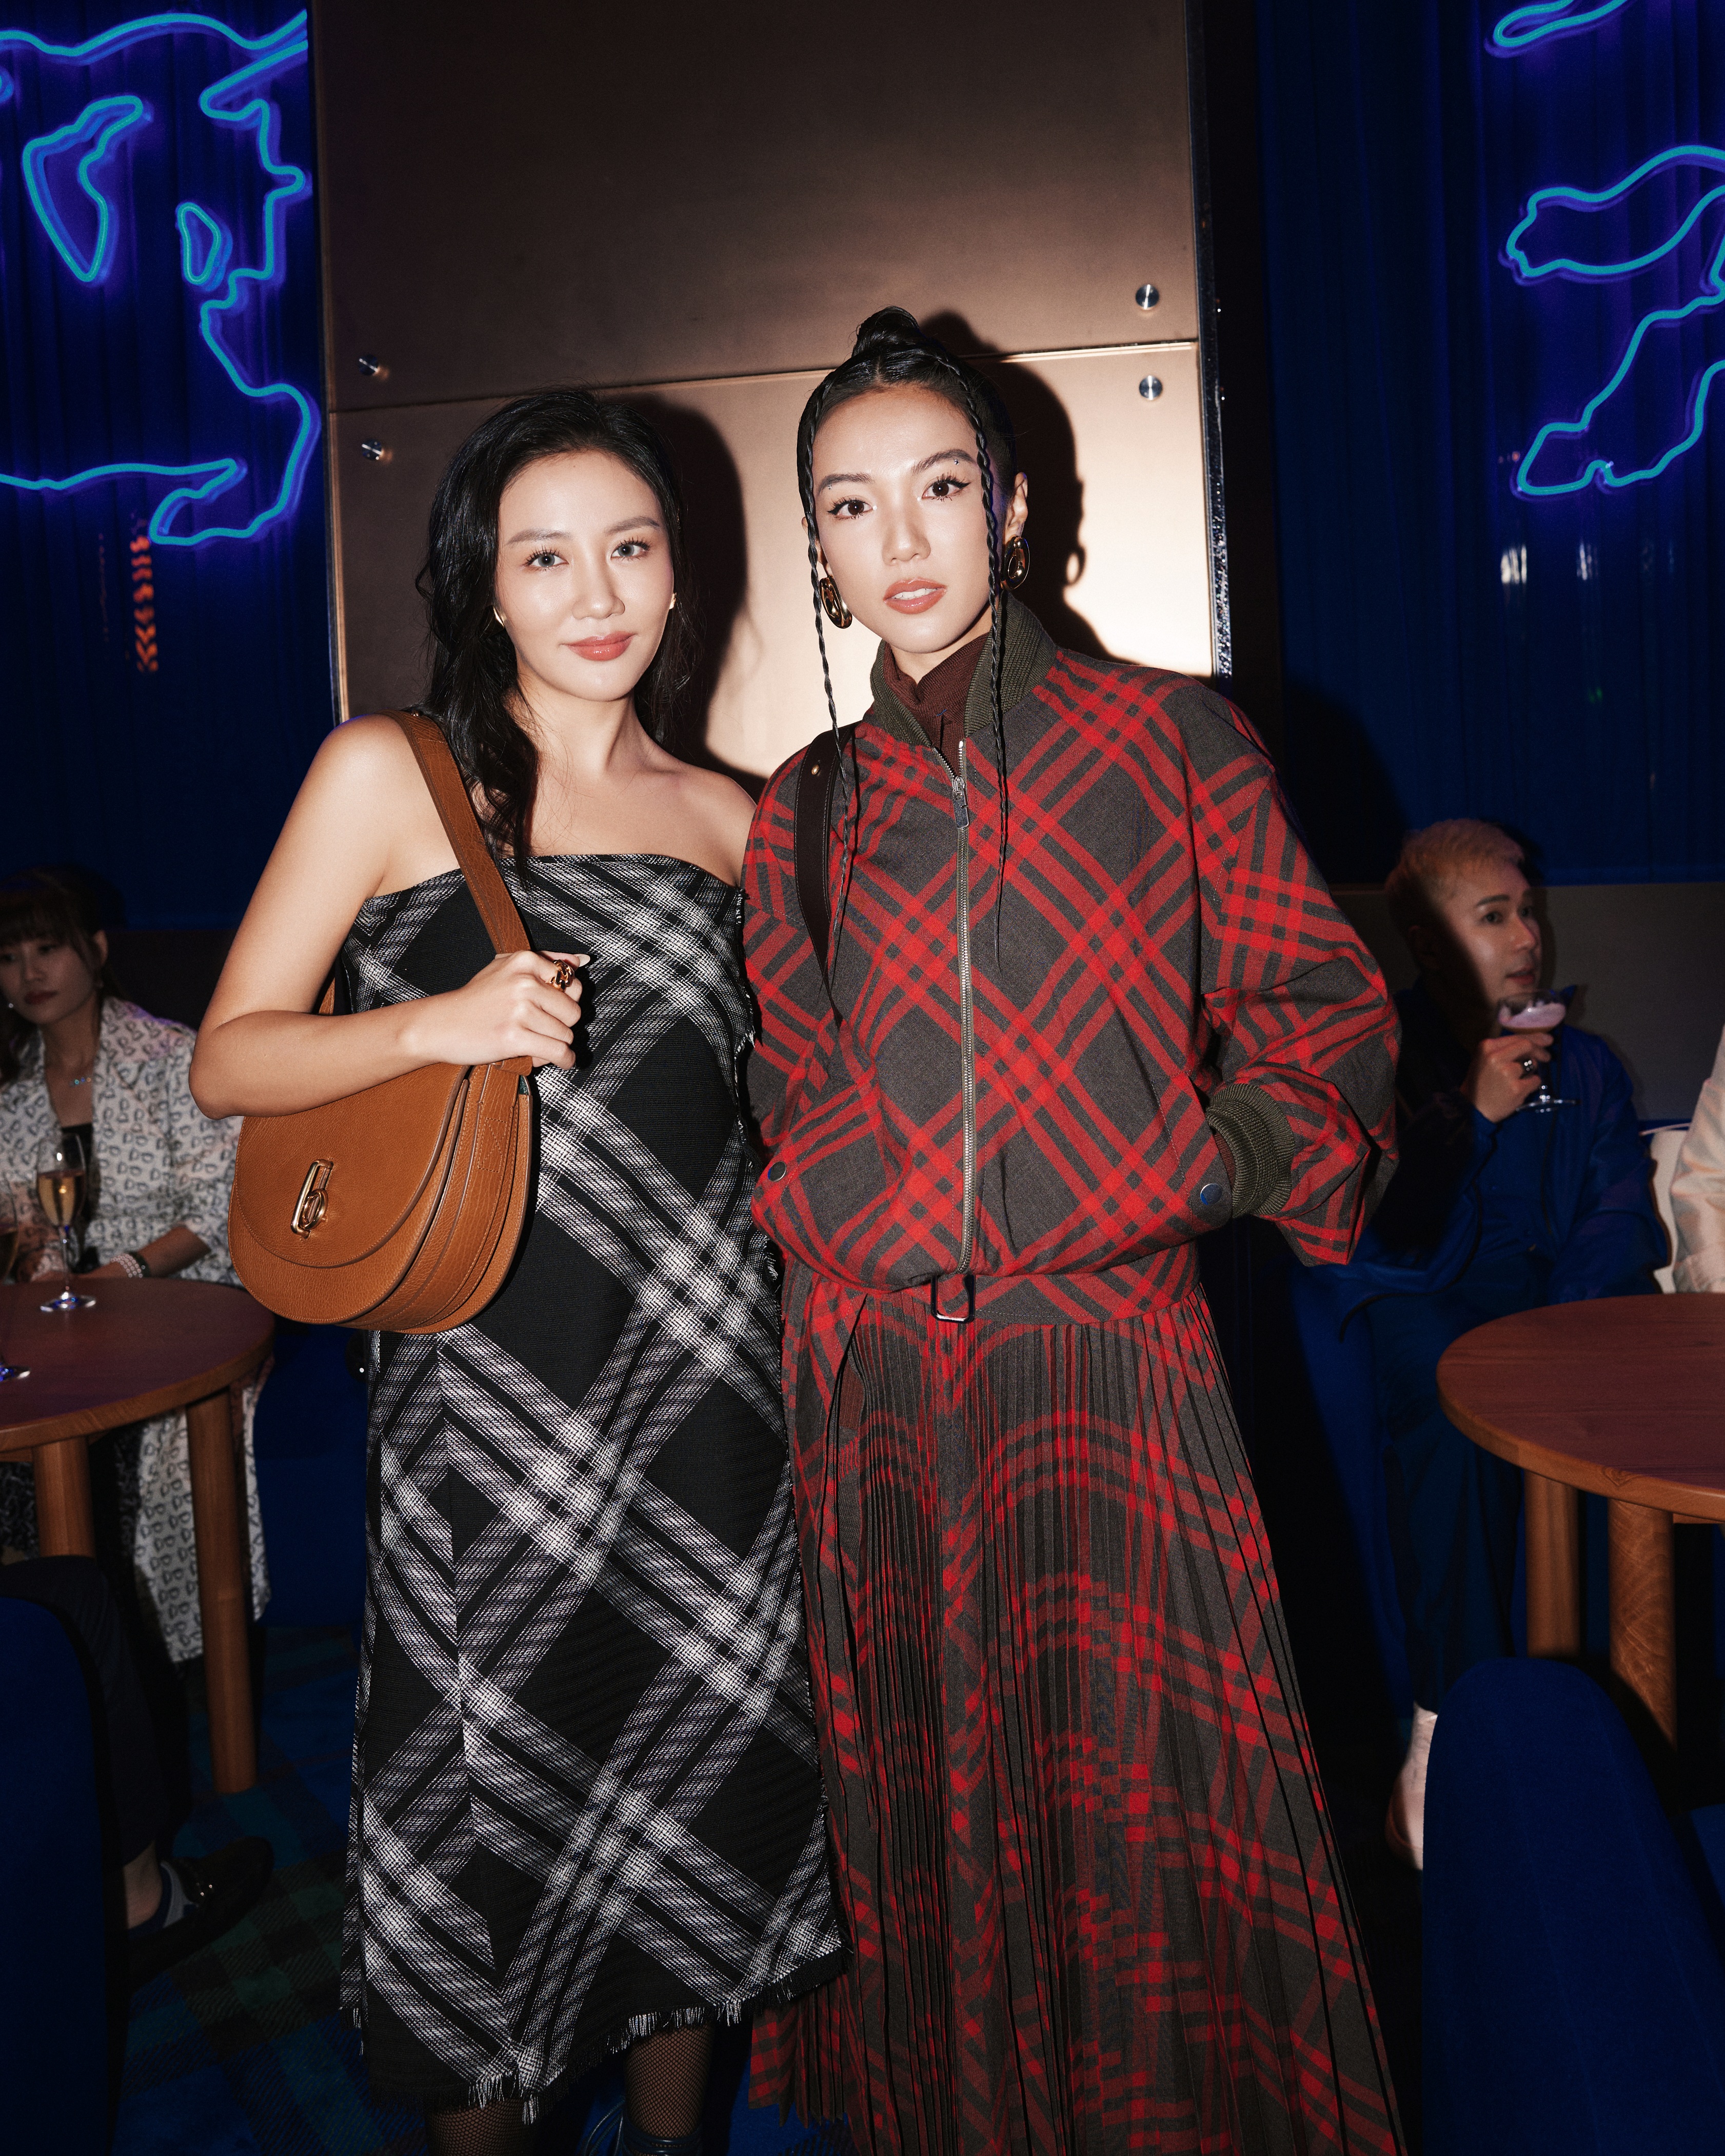 Văn Mai Hương trong khung hình chụp cùng Yoyo Cao - một fashionista người Singapore, nổi bật trong làng thời trang thế giới.